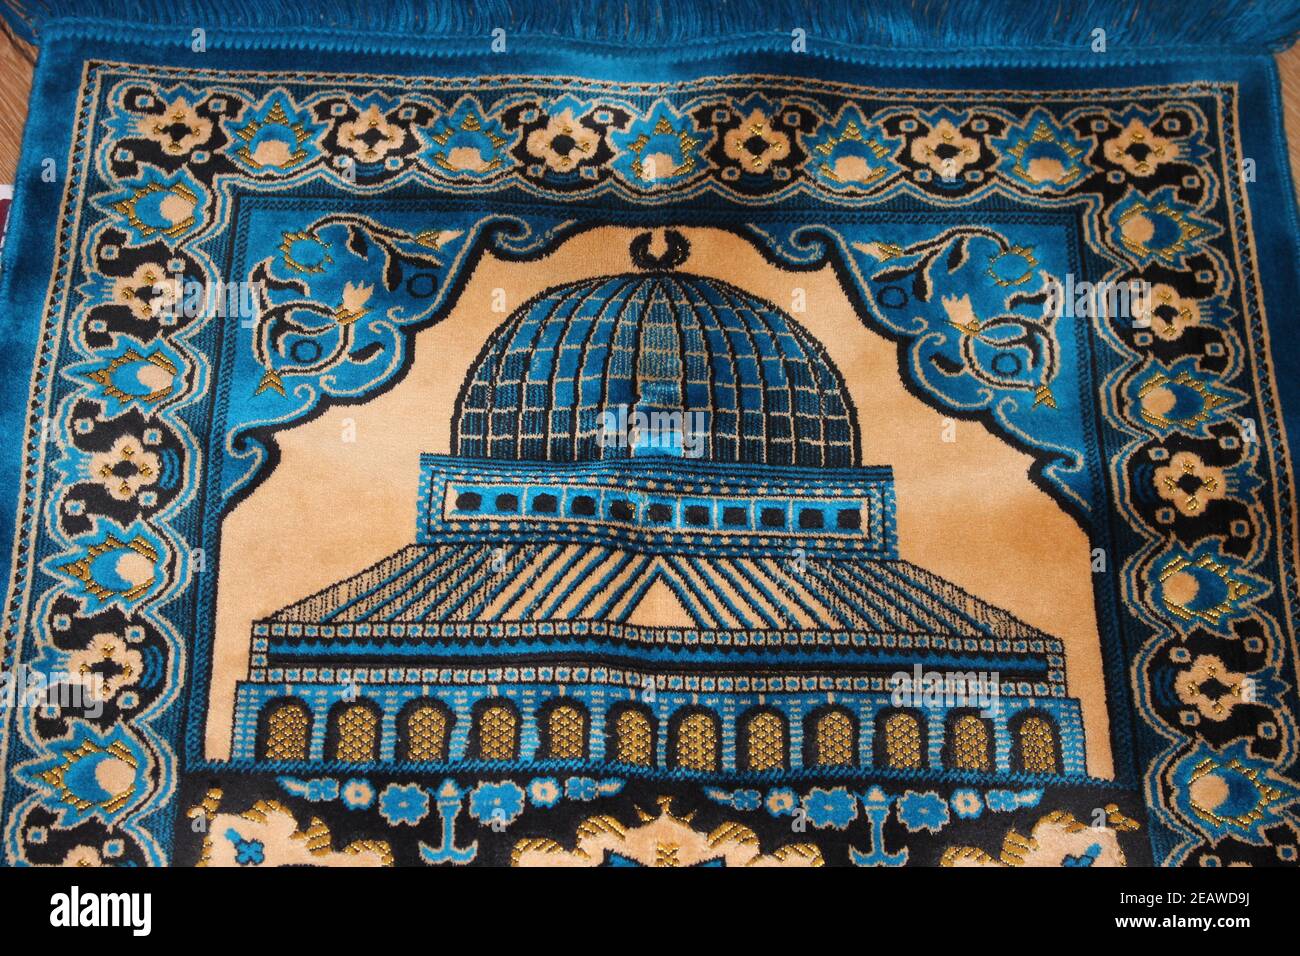 Vue en grand angle d'un beau tapis de prière ou d'un tapis de prière Pour les musulmans Banque D'Images